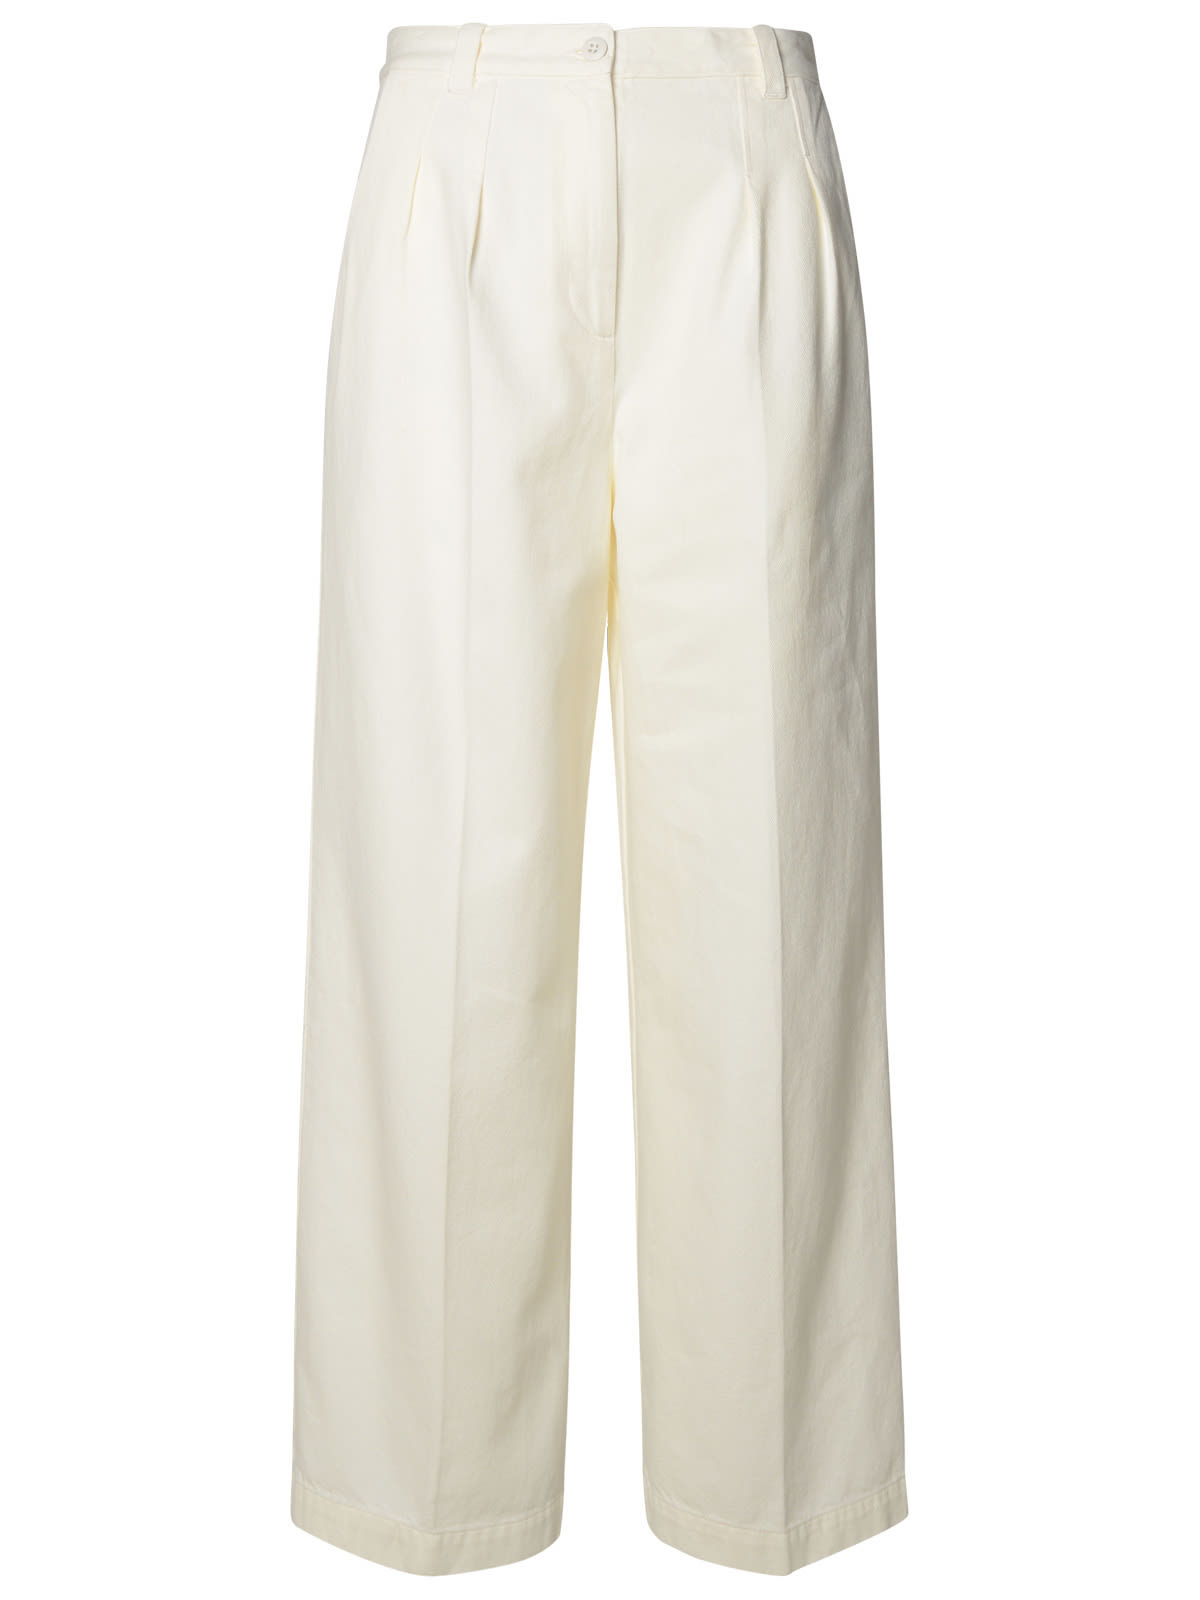 Shop Apc White Cotton Pants